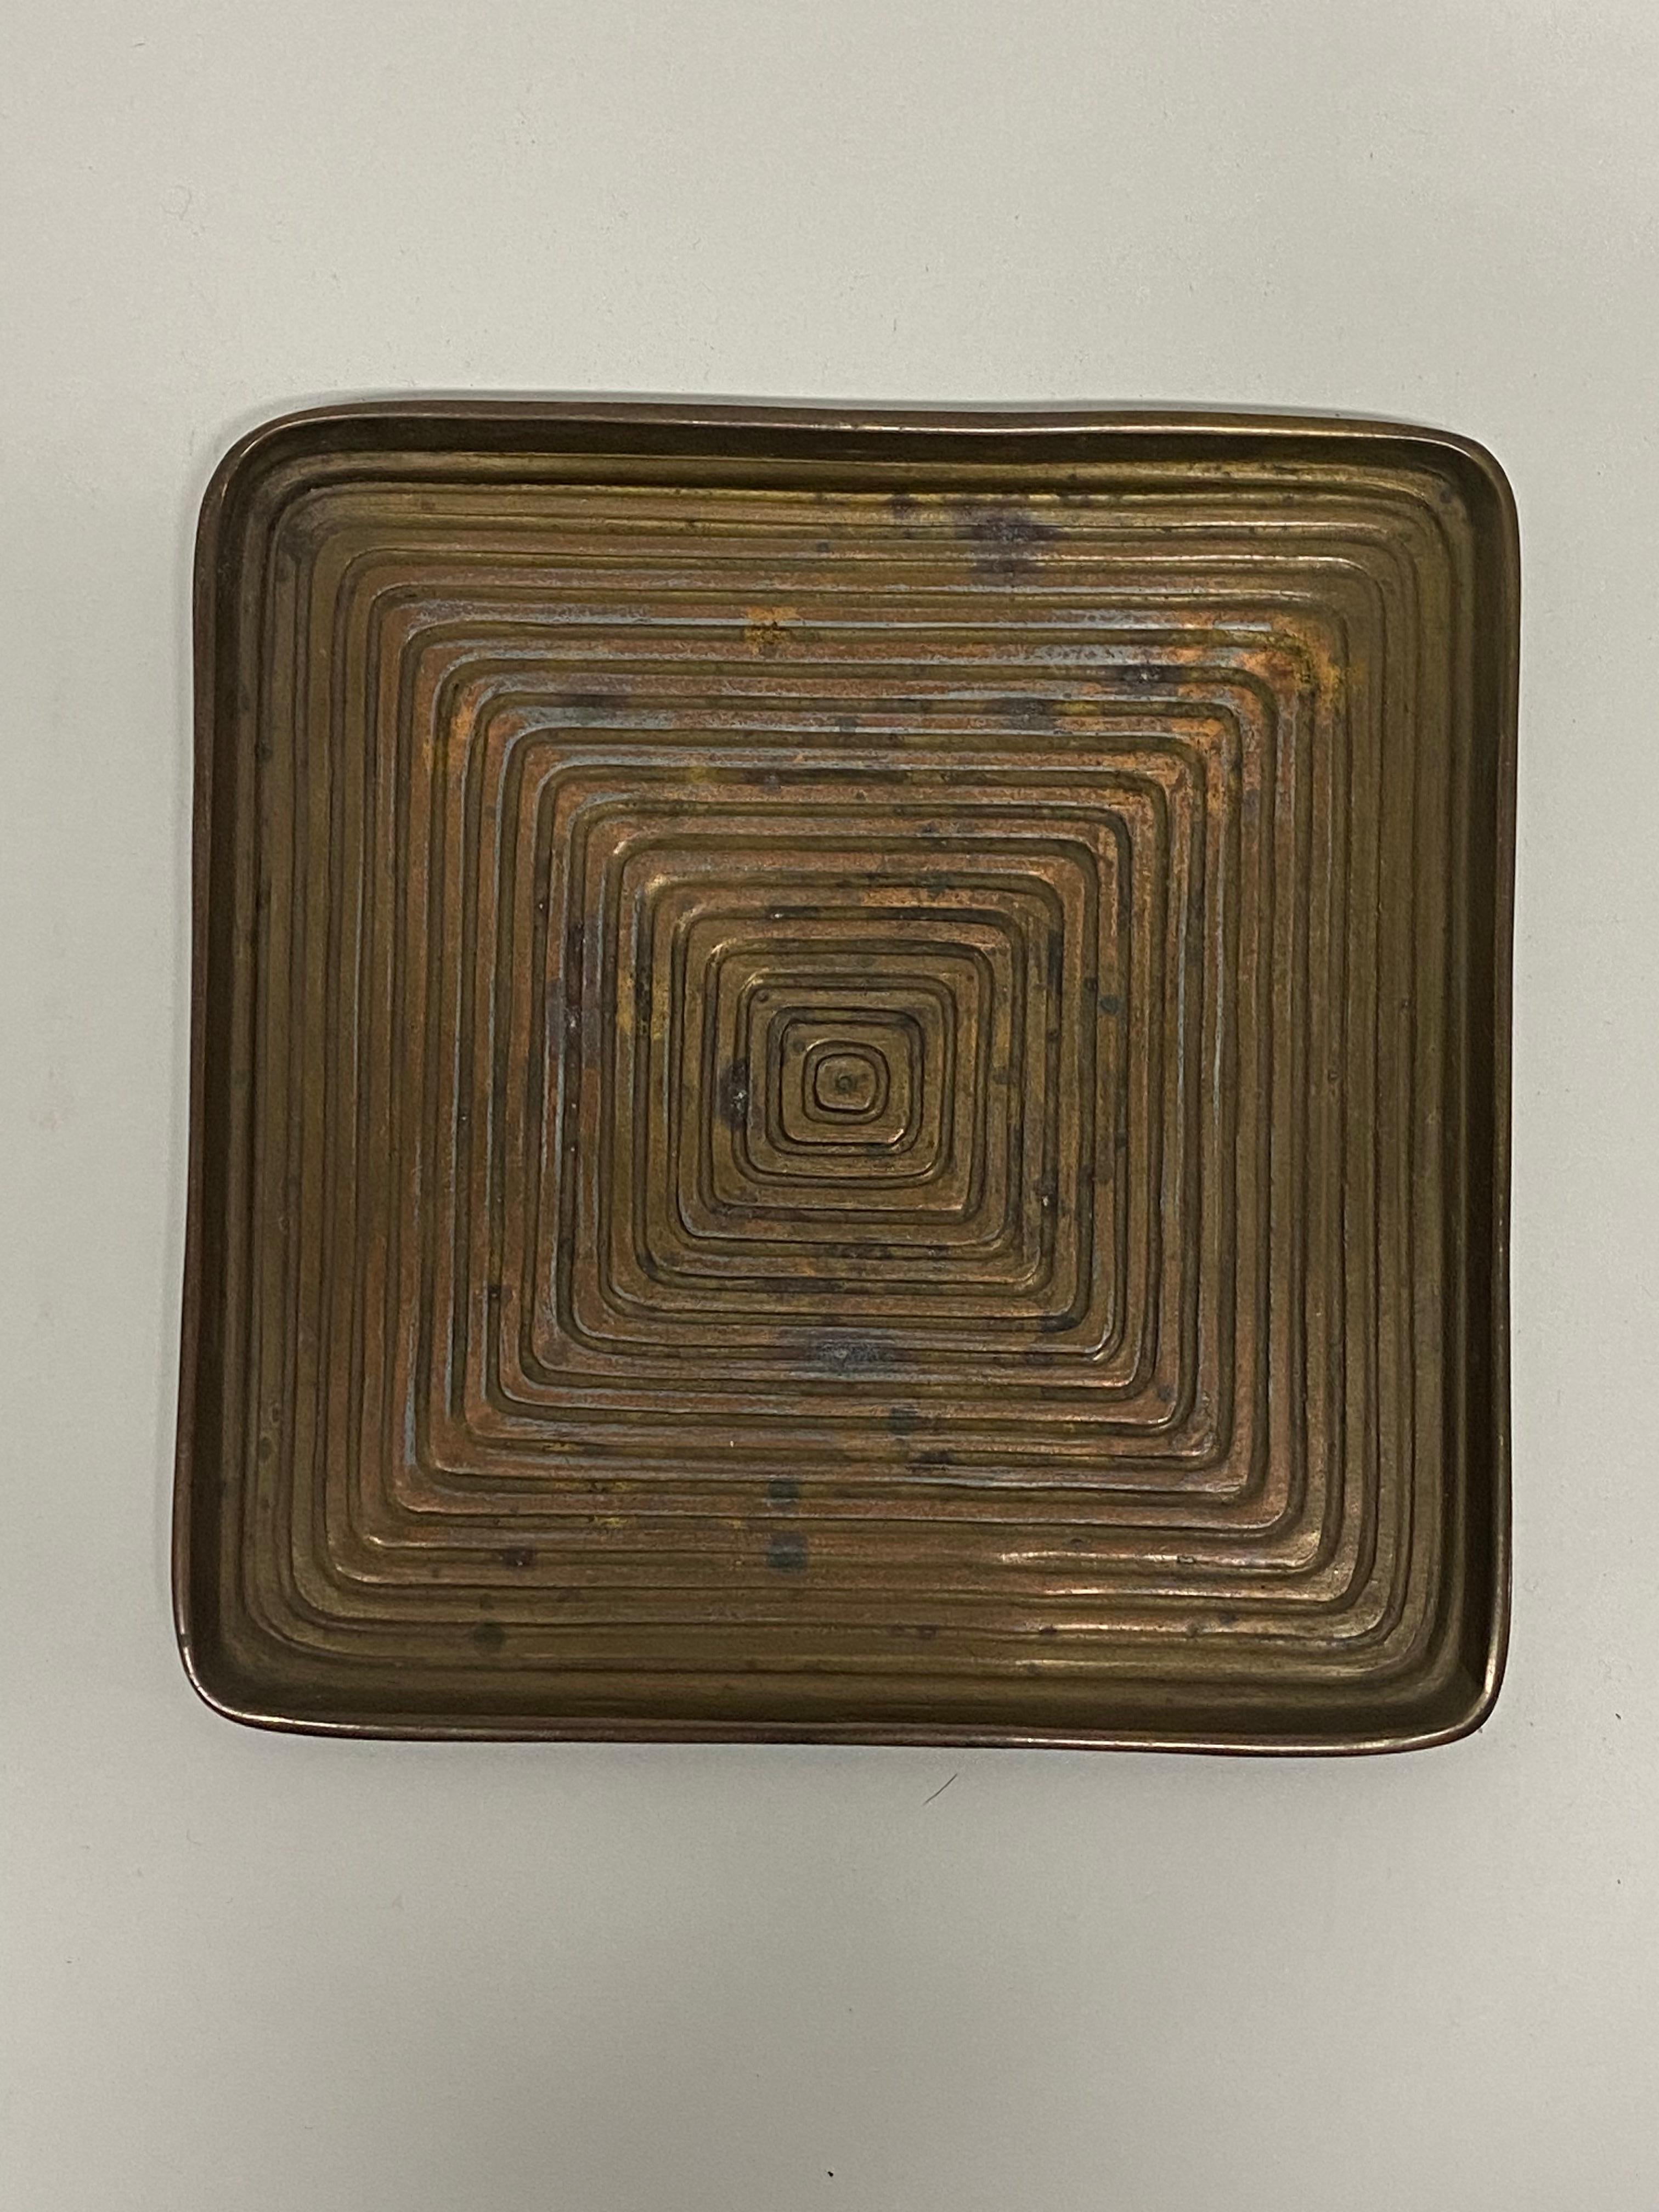 Plat carré concentrique en métal moulé conçu par Ben Seibel pour Jenfred. Vers 1950. Seibel crée un joli labyrinthe optique de carrés concentriques de plus en plus grands. Bon état général avec une oxydation mineure et une patine Verdi gris. Petites